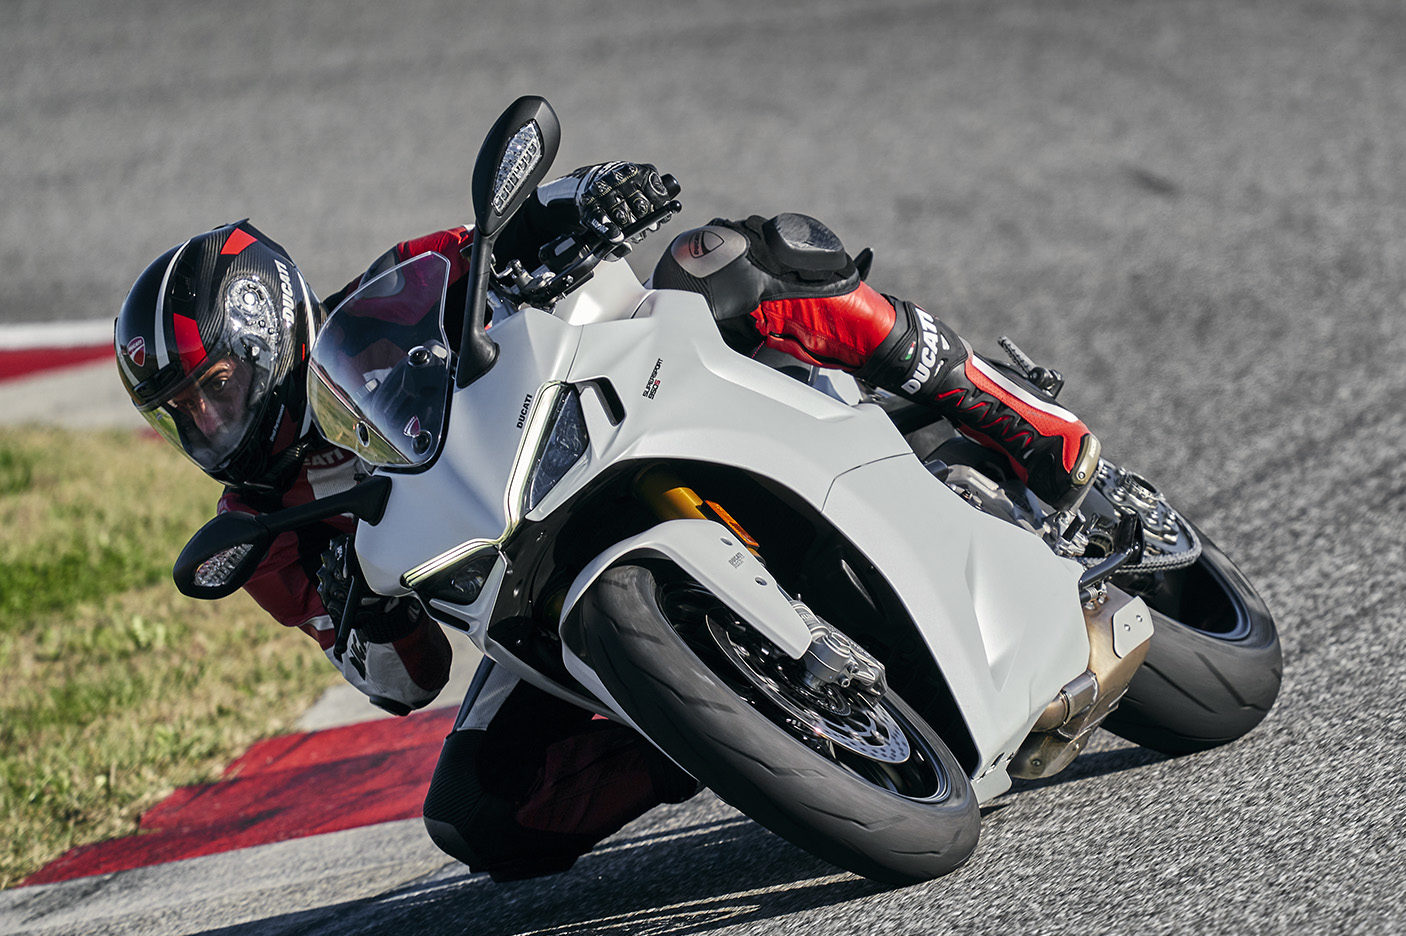 2021 Ducati Supersport 950